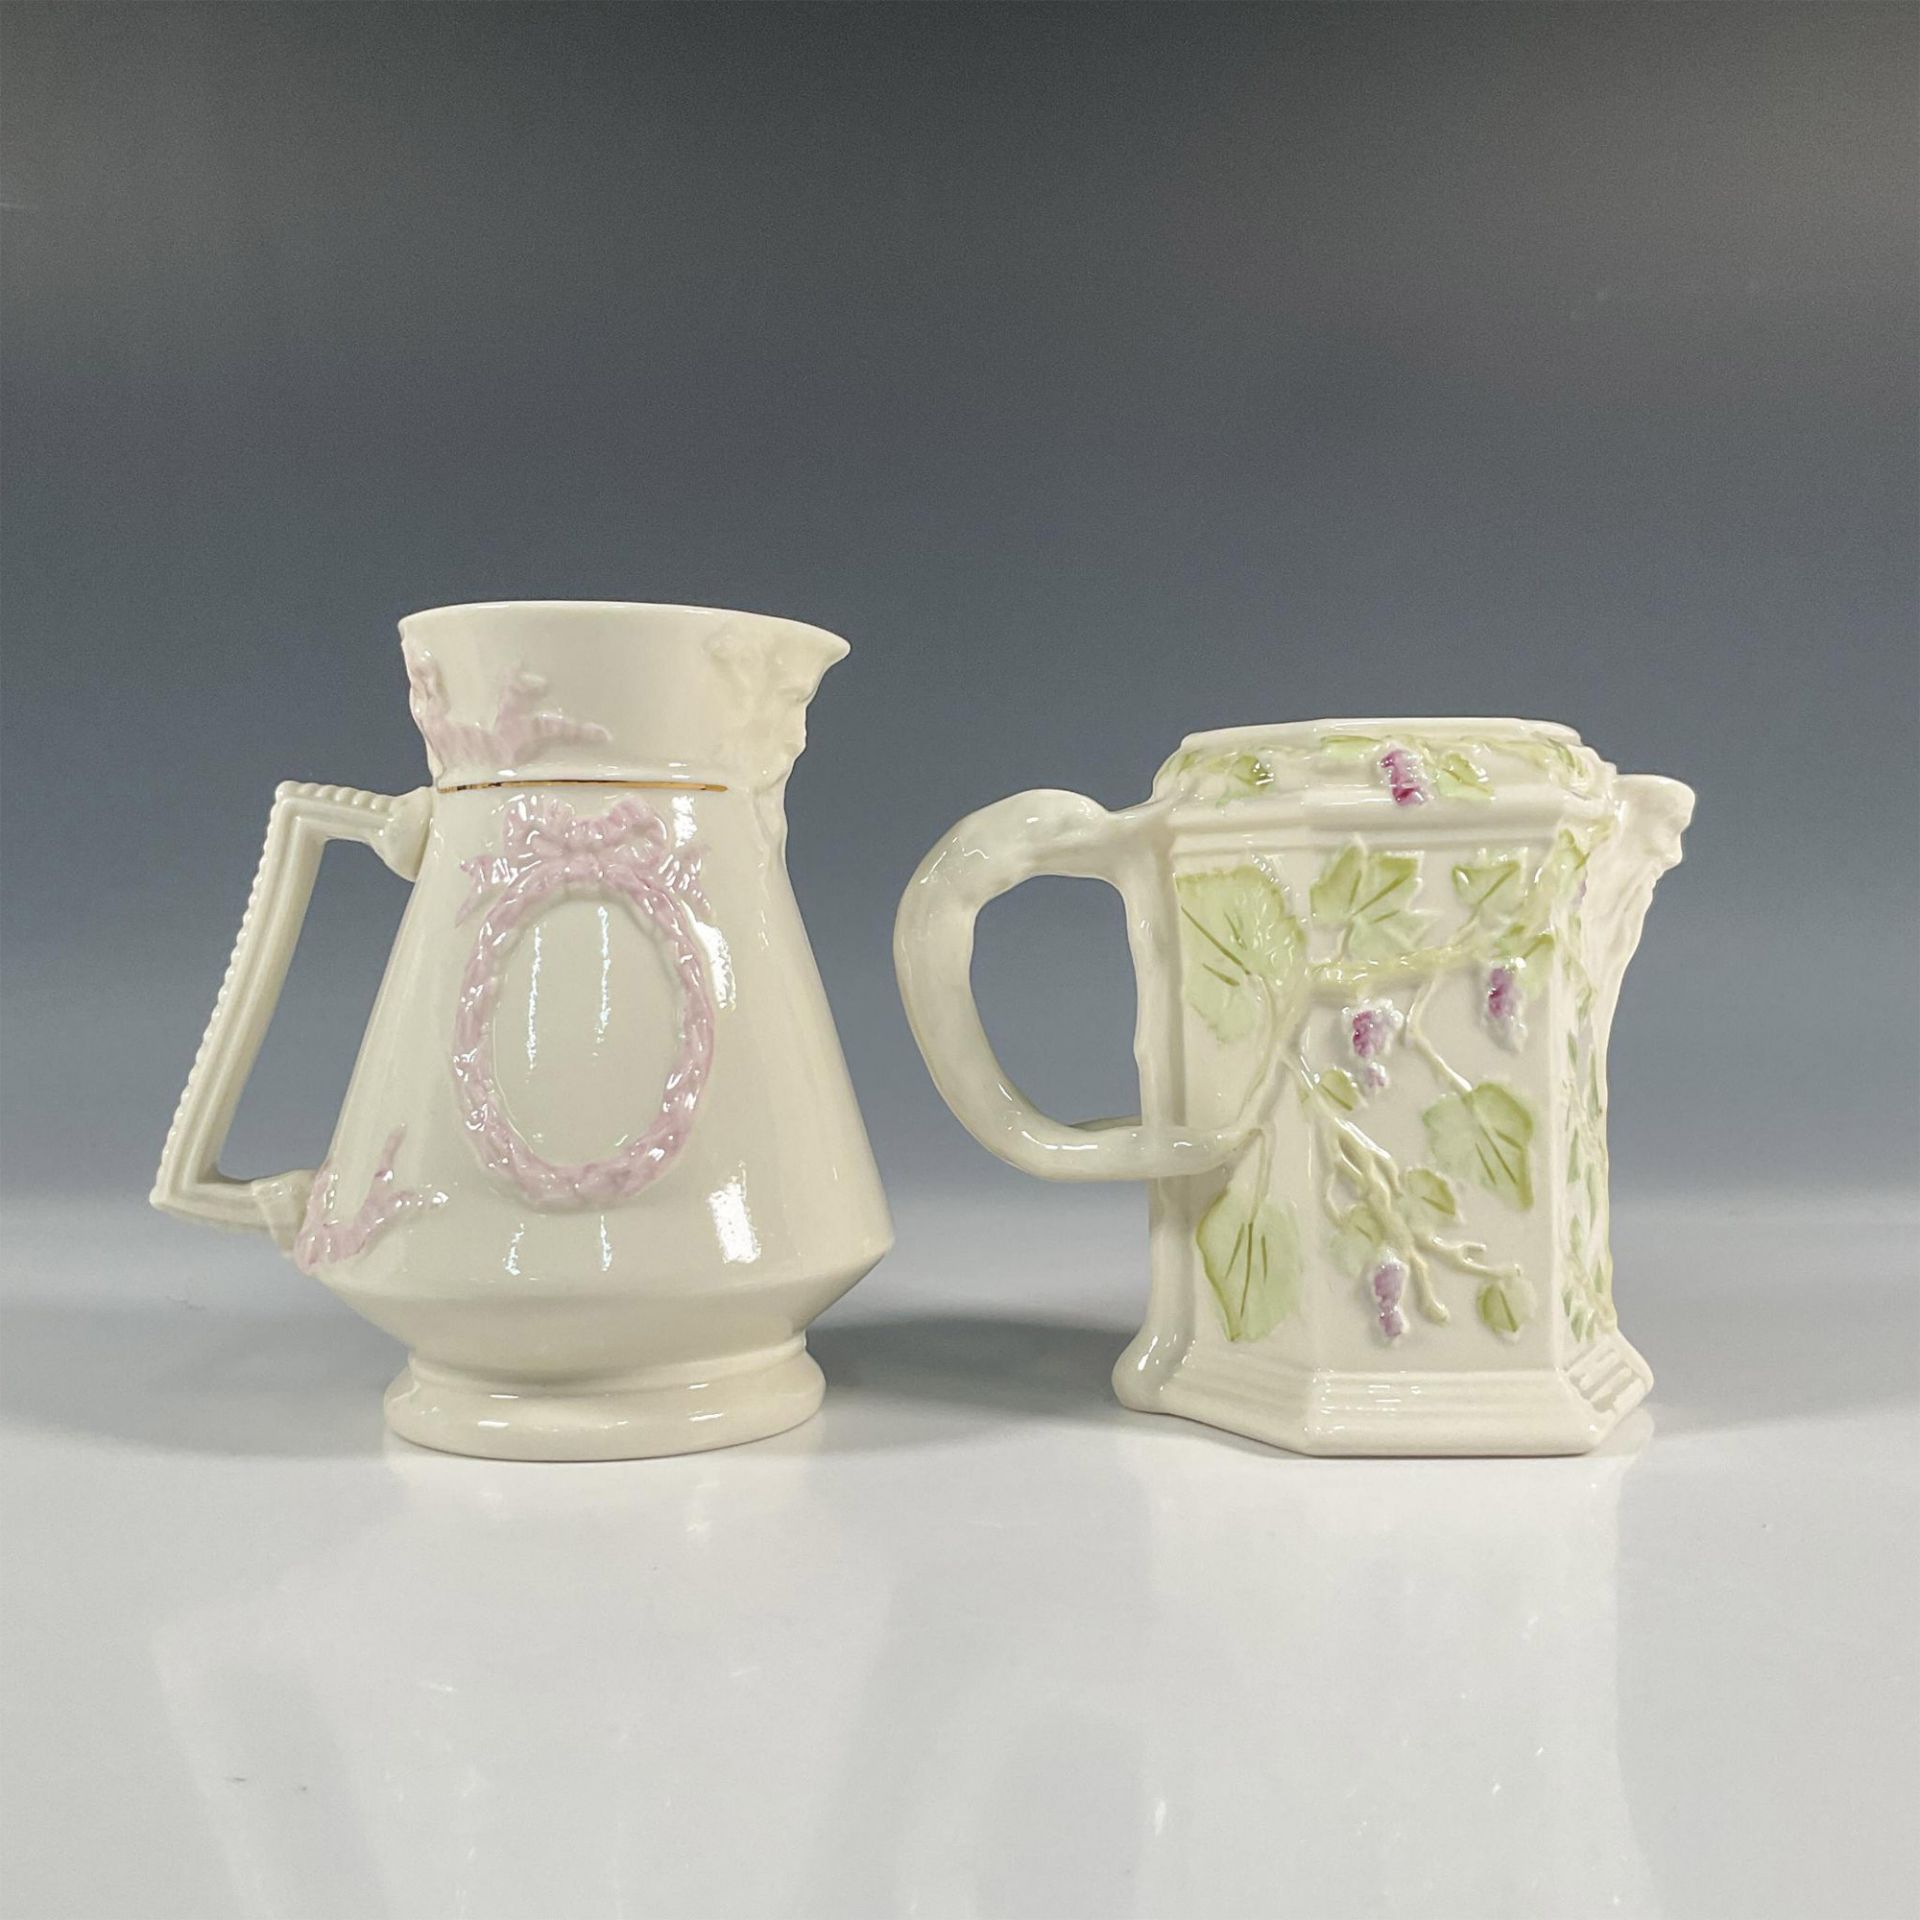 2pc Belleek Porcelain Florence Pitcher and Vine Jug - Image 2 of 5